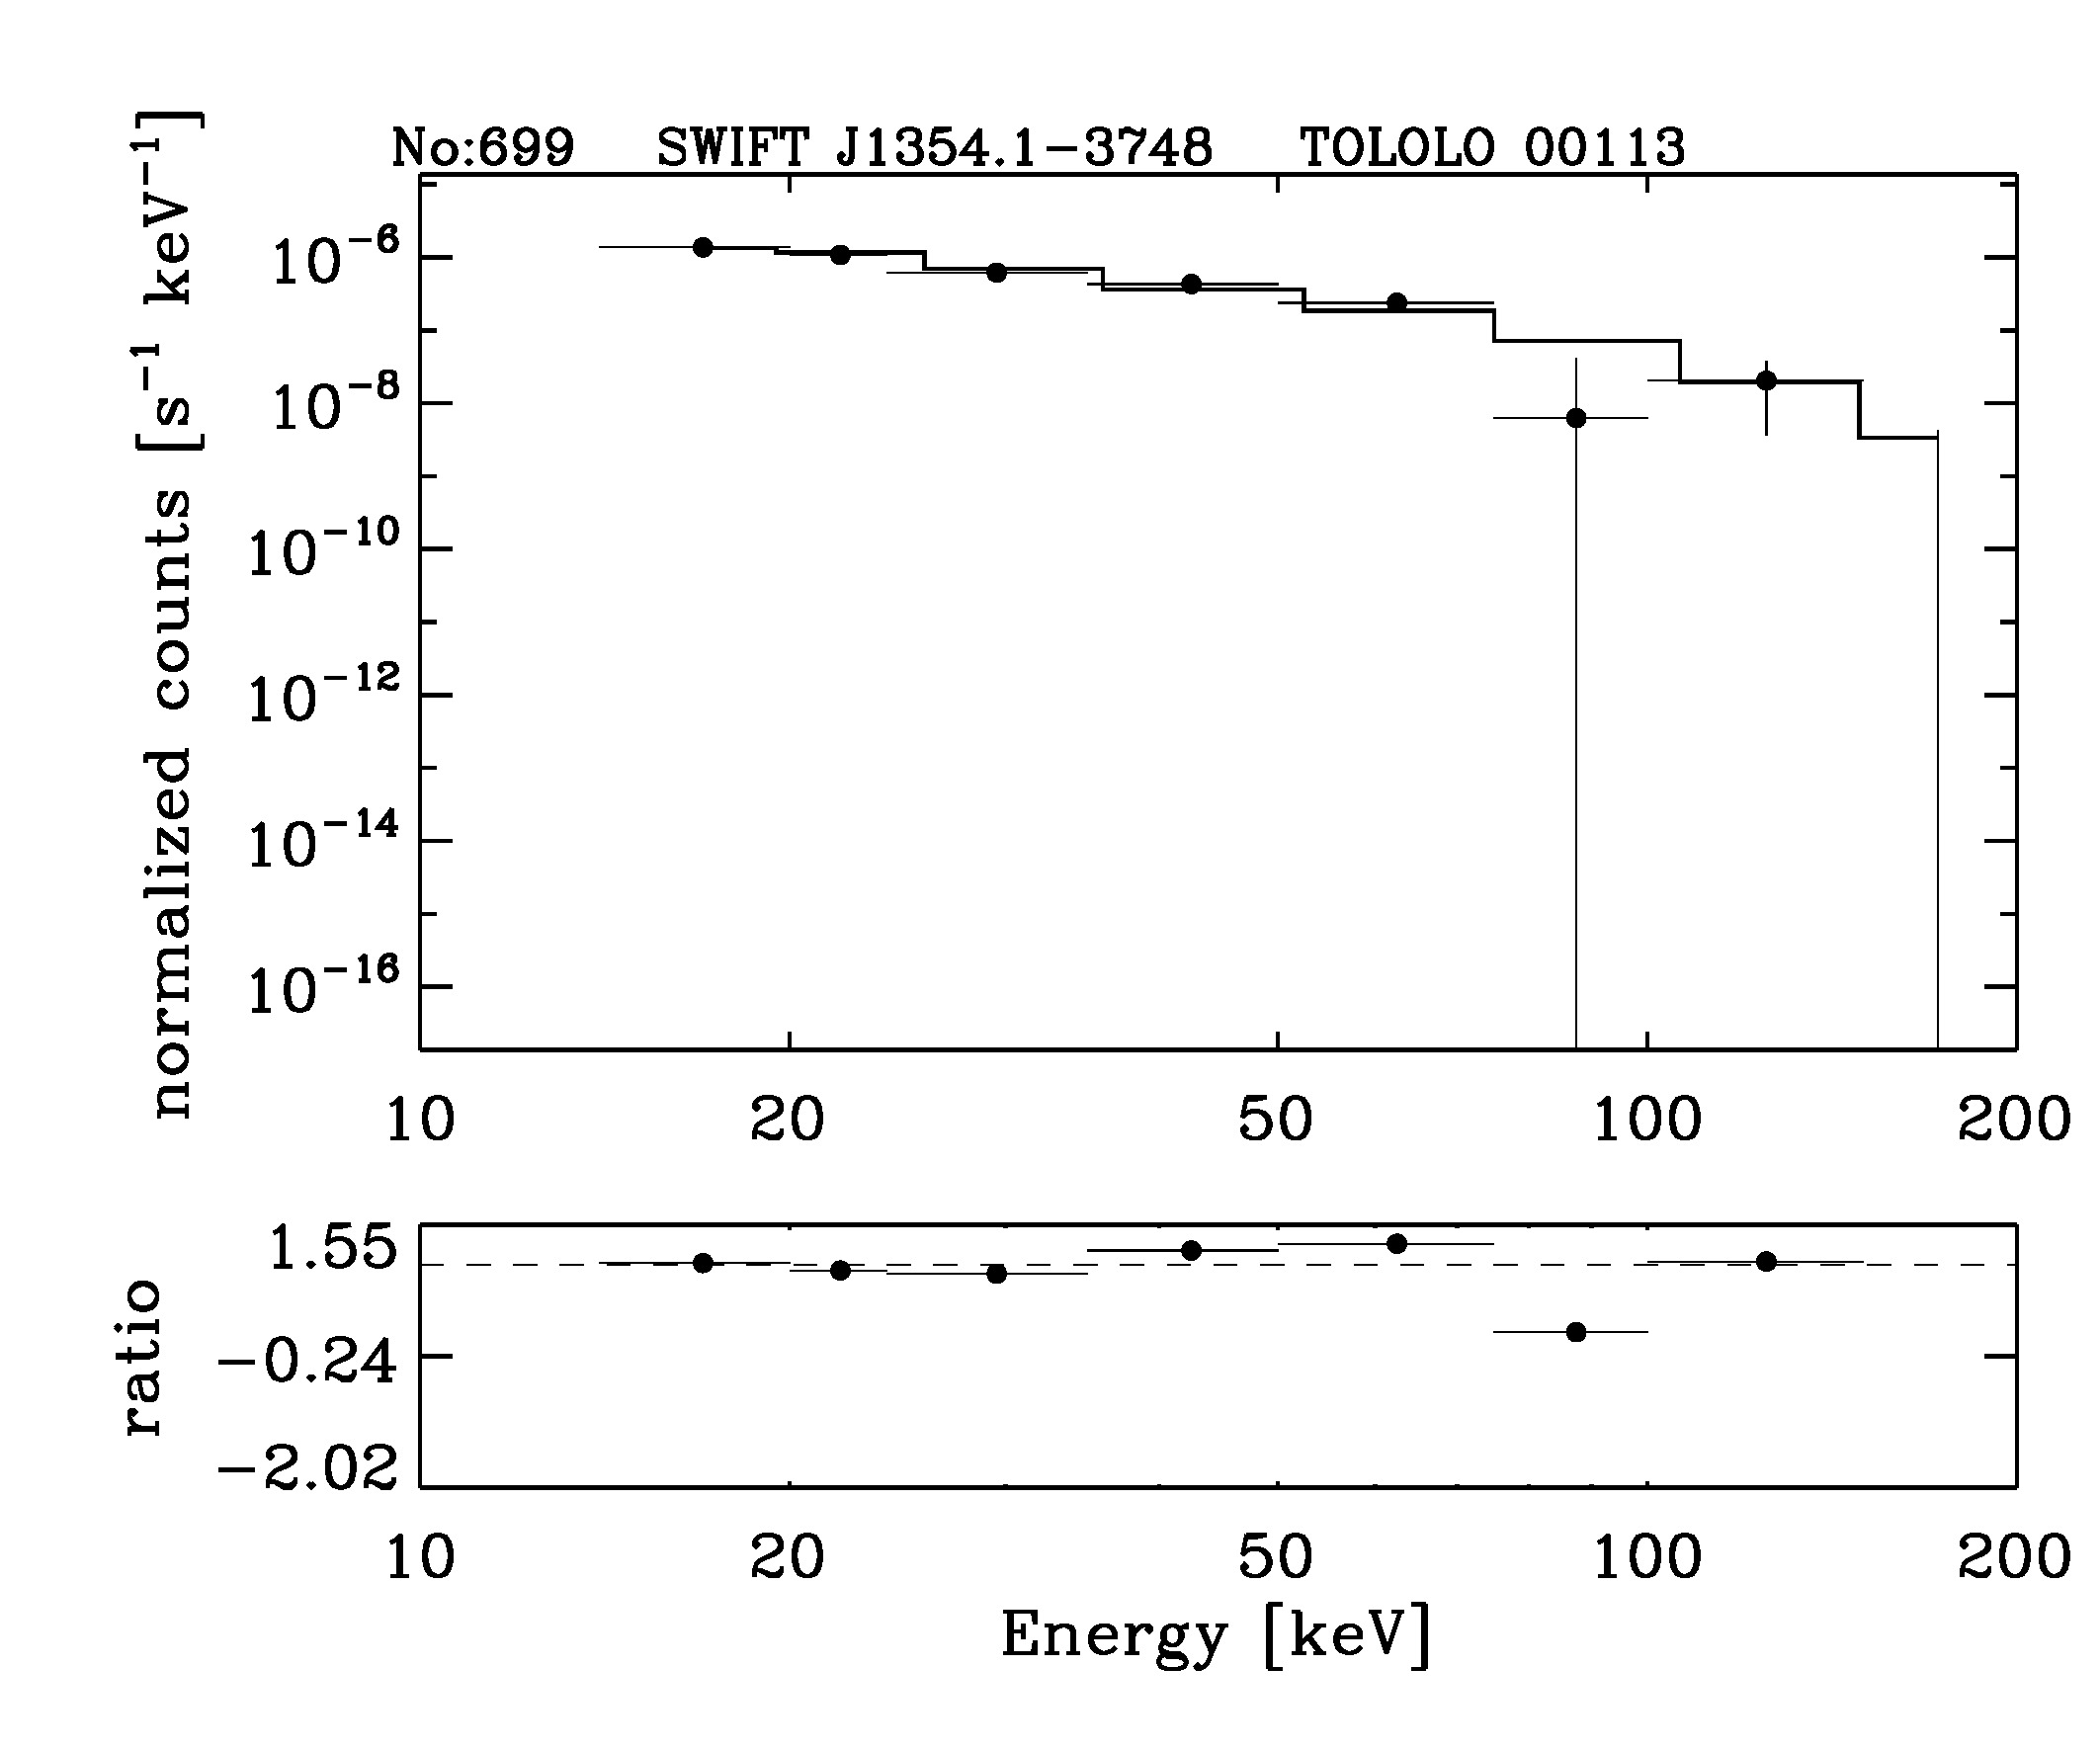 BAT Spectrum for SWIFT J1354.1-3748